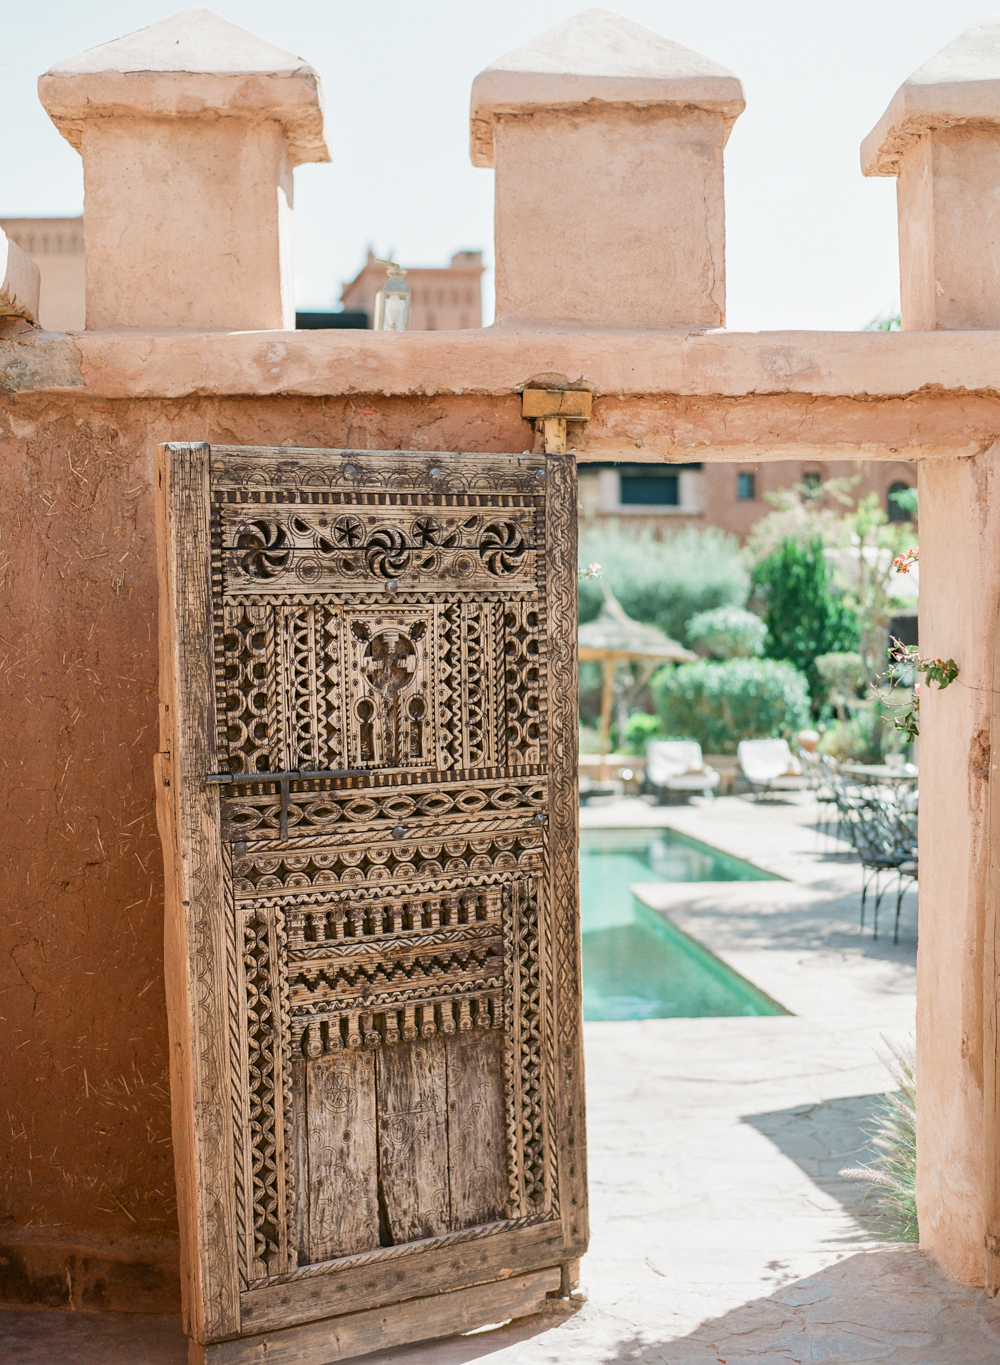 Morocco Destination Wedding | Molly Carr Photography | Film Photographer | Destination Wedding Photographer | Atlas Mountains | Road Trip | Ksar Ighnda